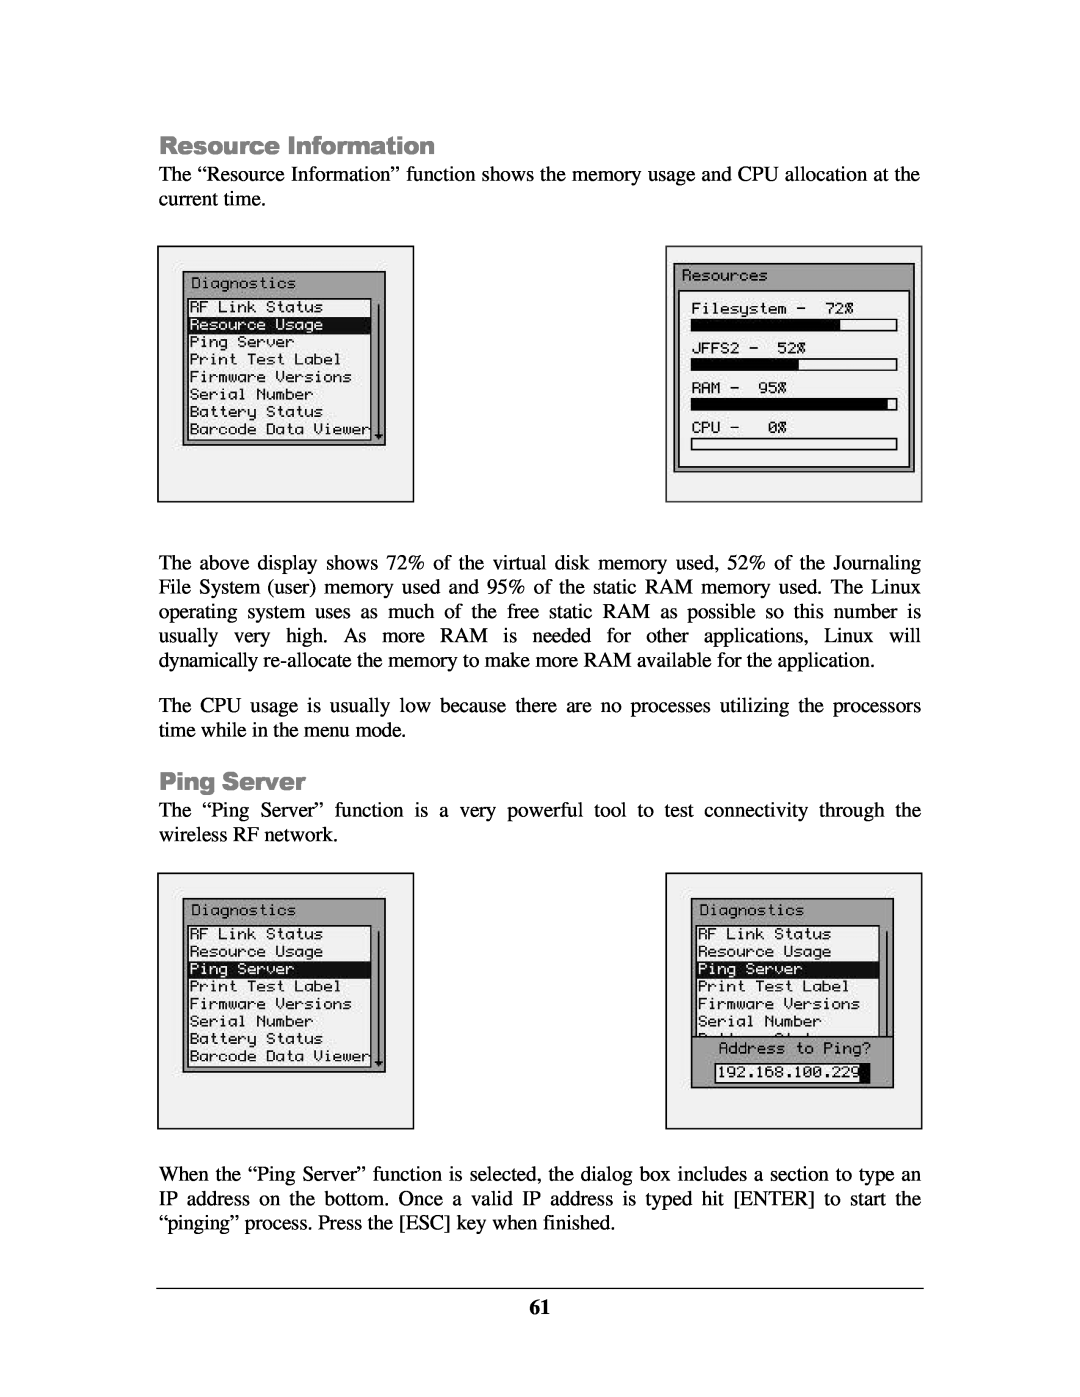 IBM M71V2 manual Resource Information, Ping Server 